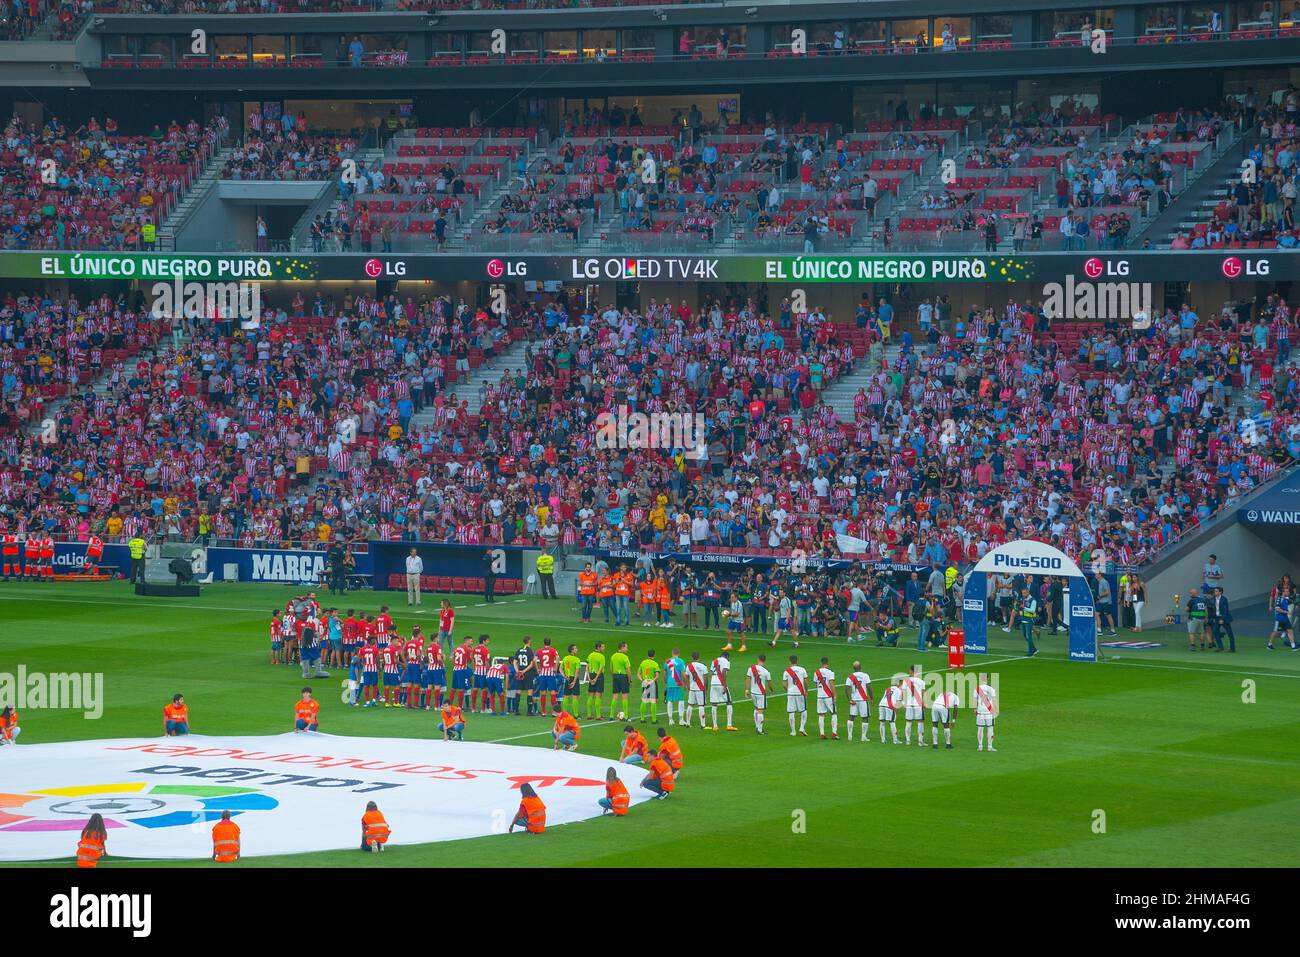 Partido de fútbol, los momentos anteriores. Wanda estadio Metropolitano, Madrid, España. Foto de stock